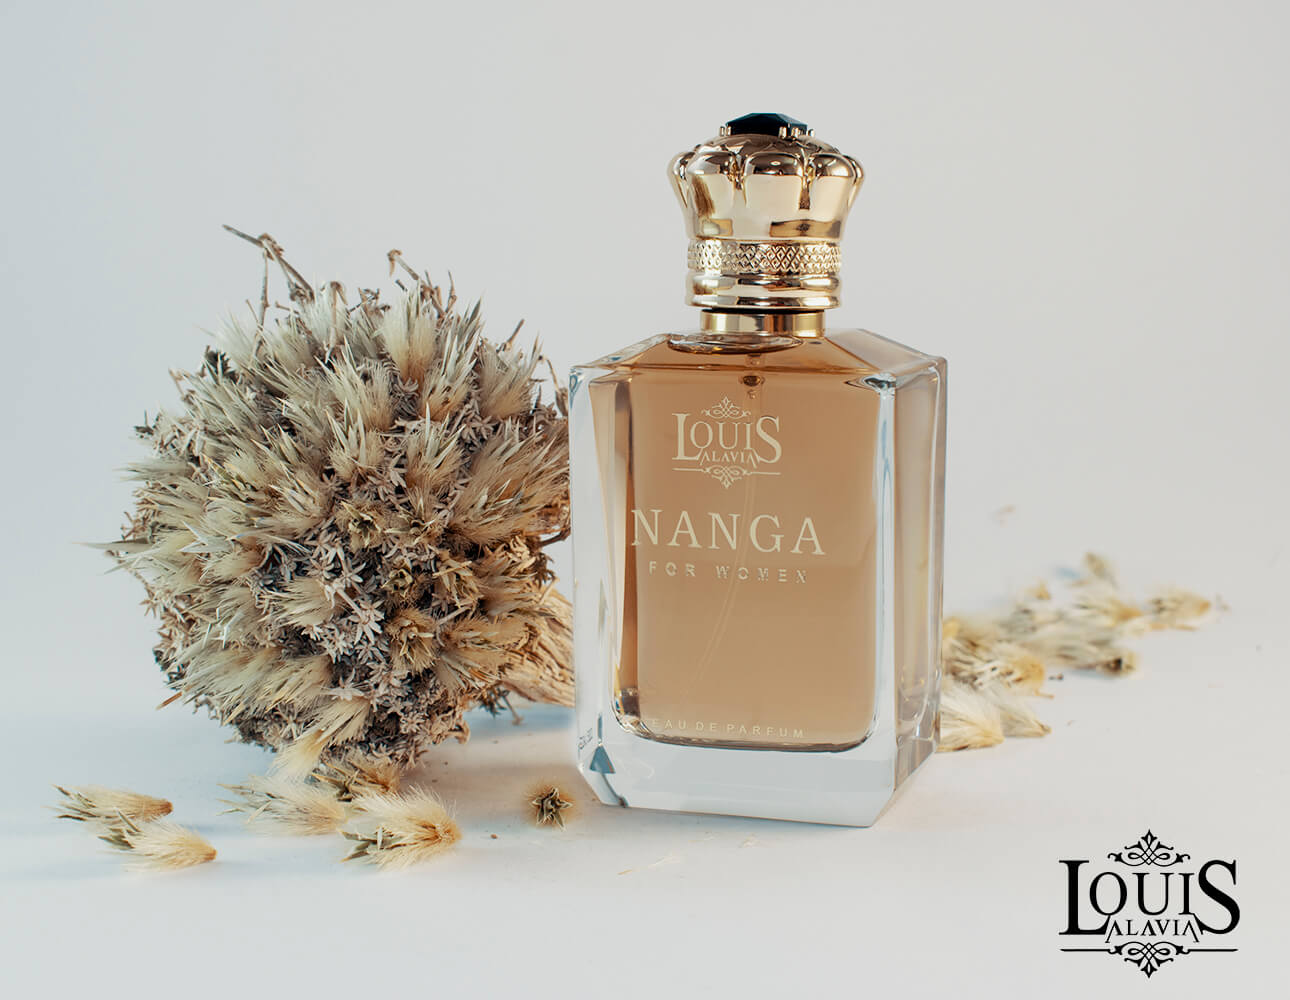 NANGA Louis alavia Luxury perfume brand